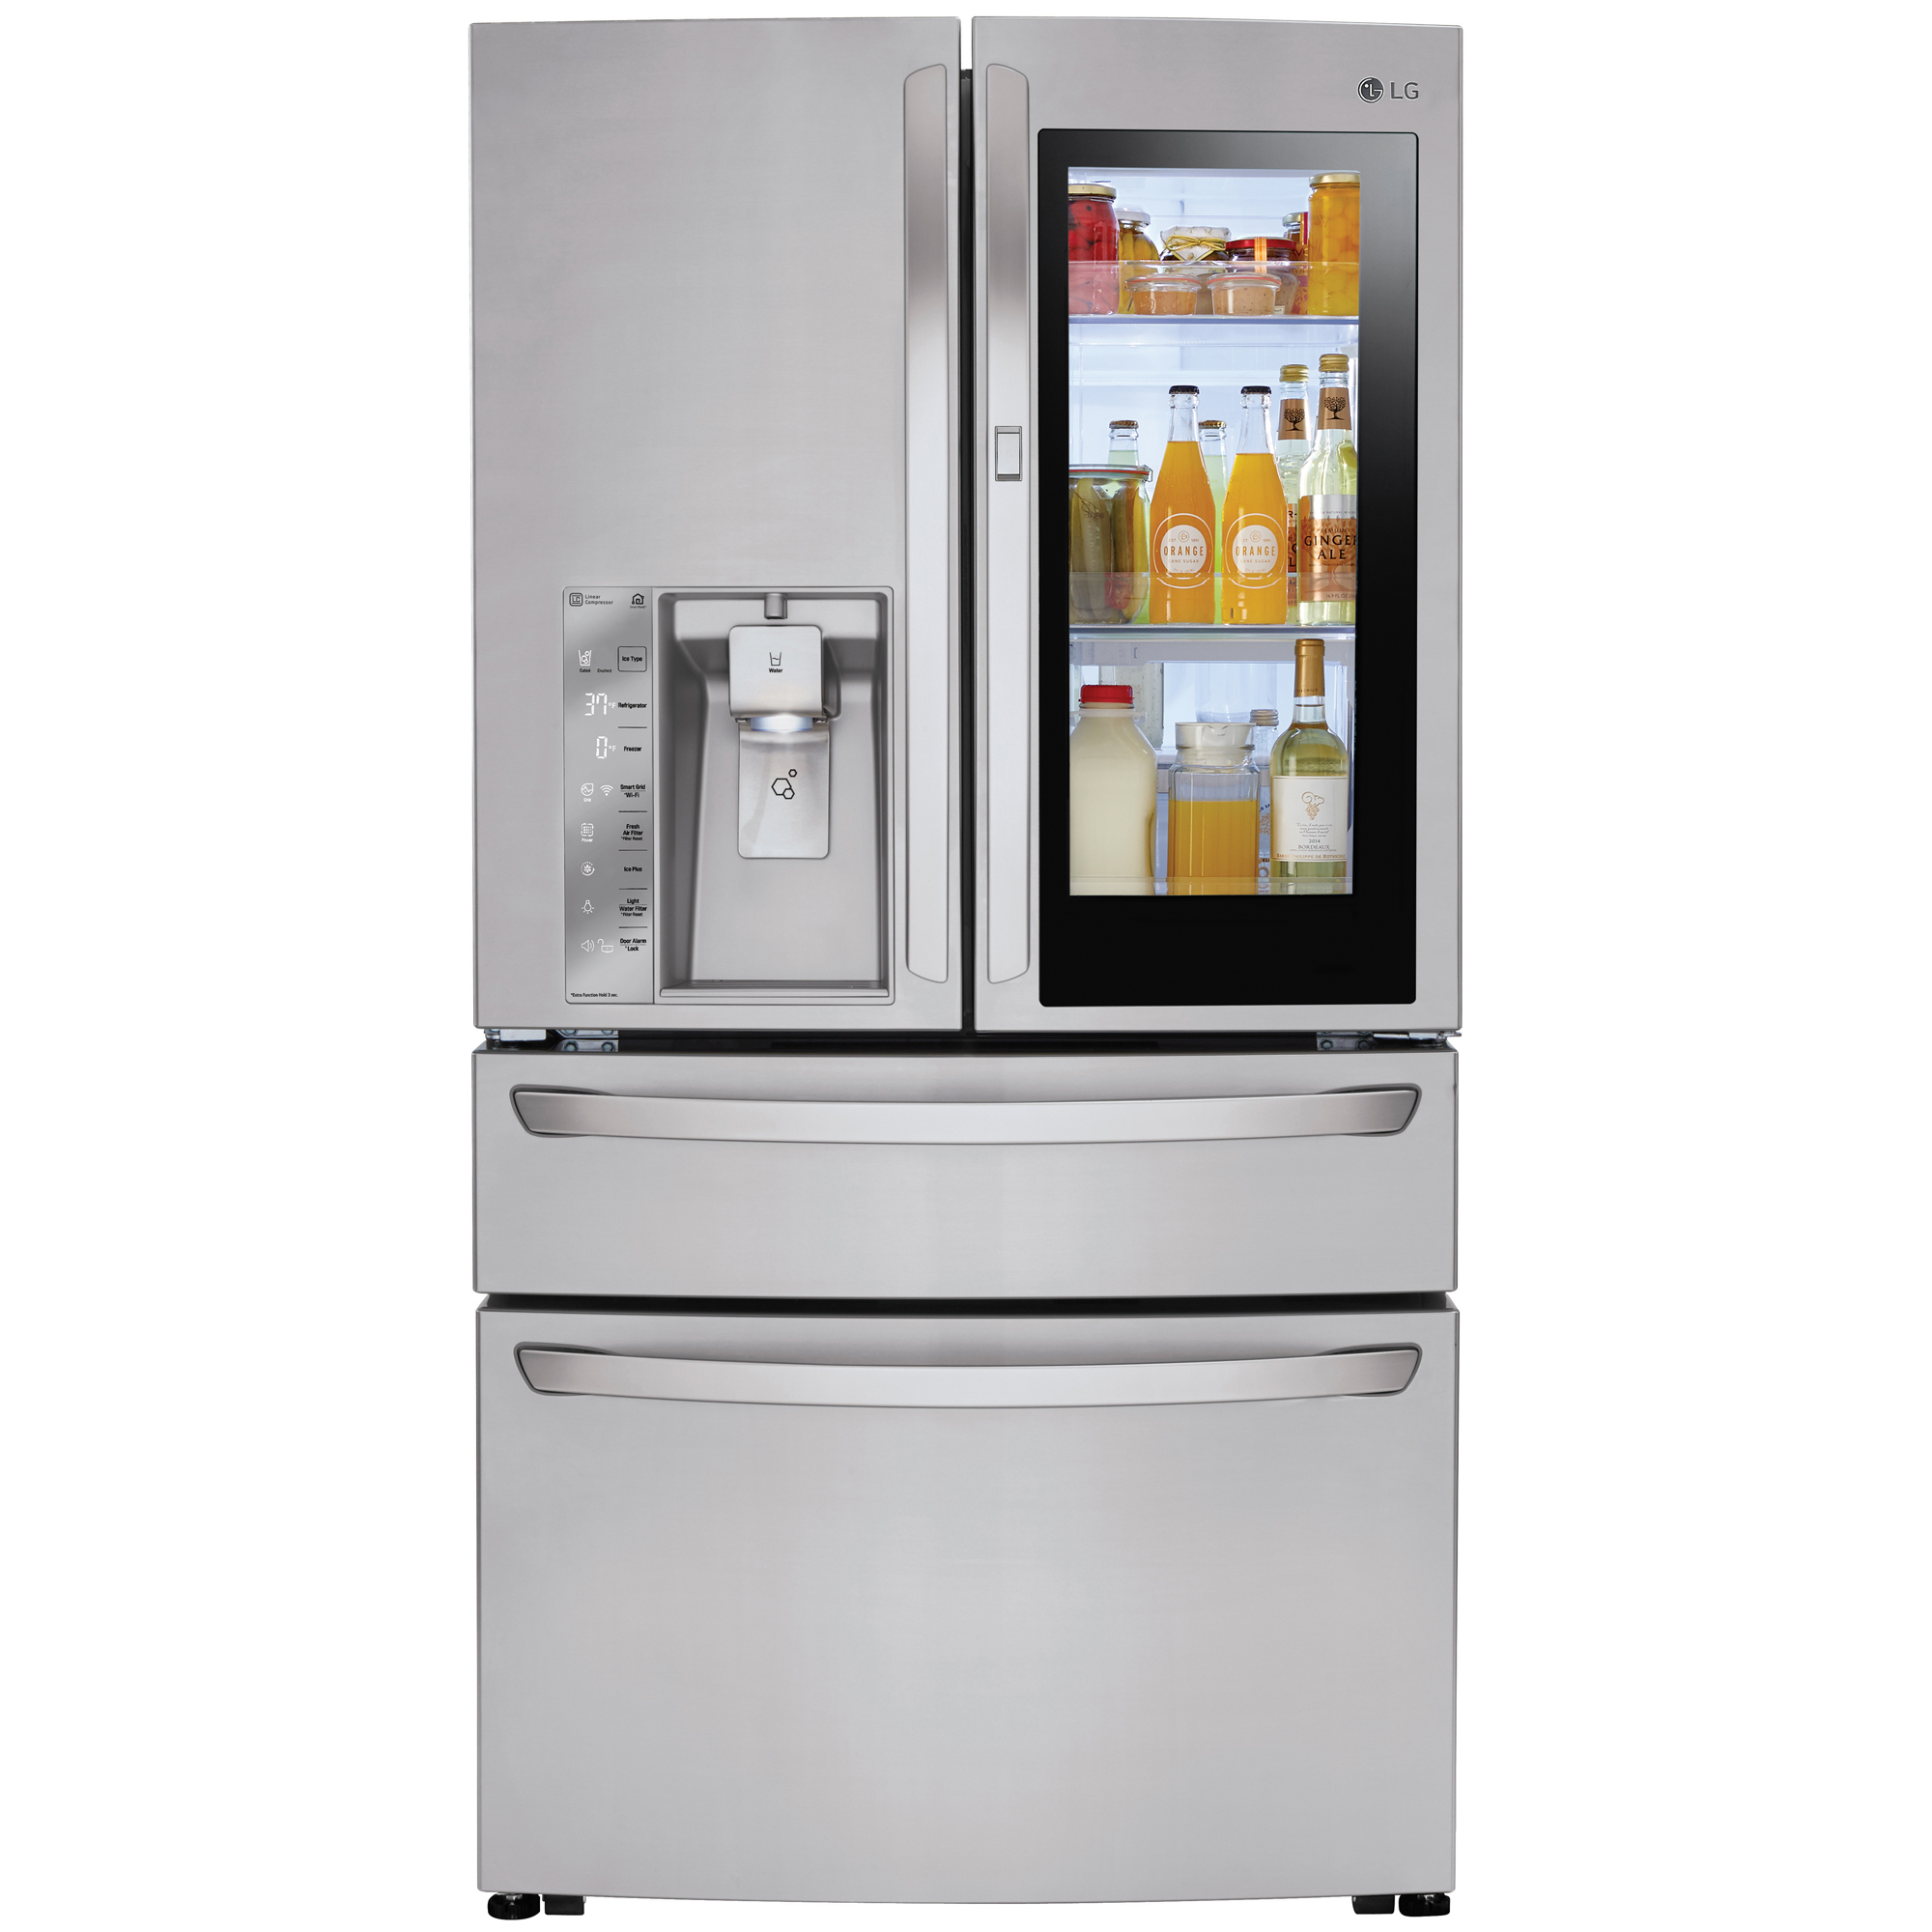 LG LMXC23796S 23 cu. ft. 4-Door French Door Counter-Depth Refrigerator